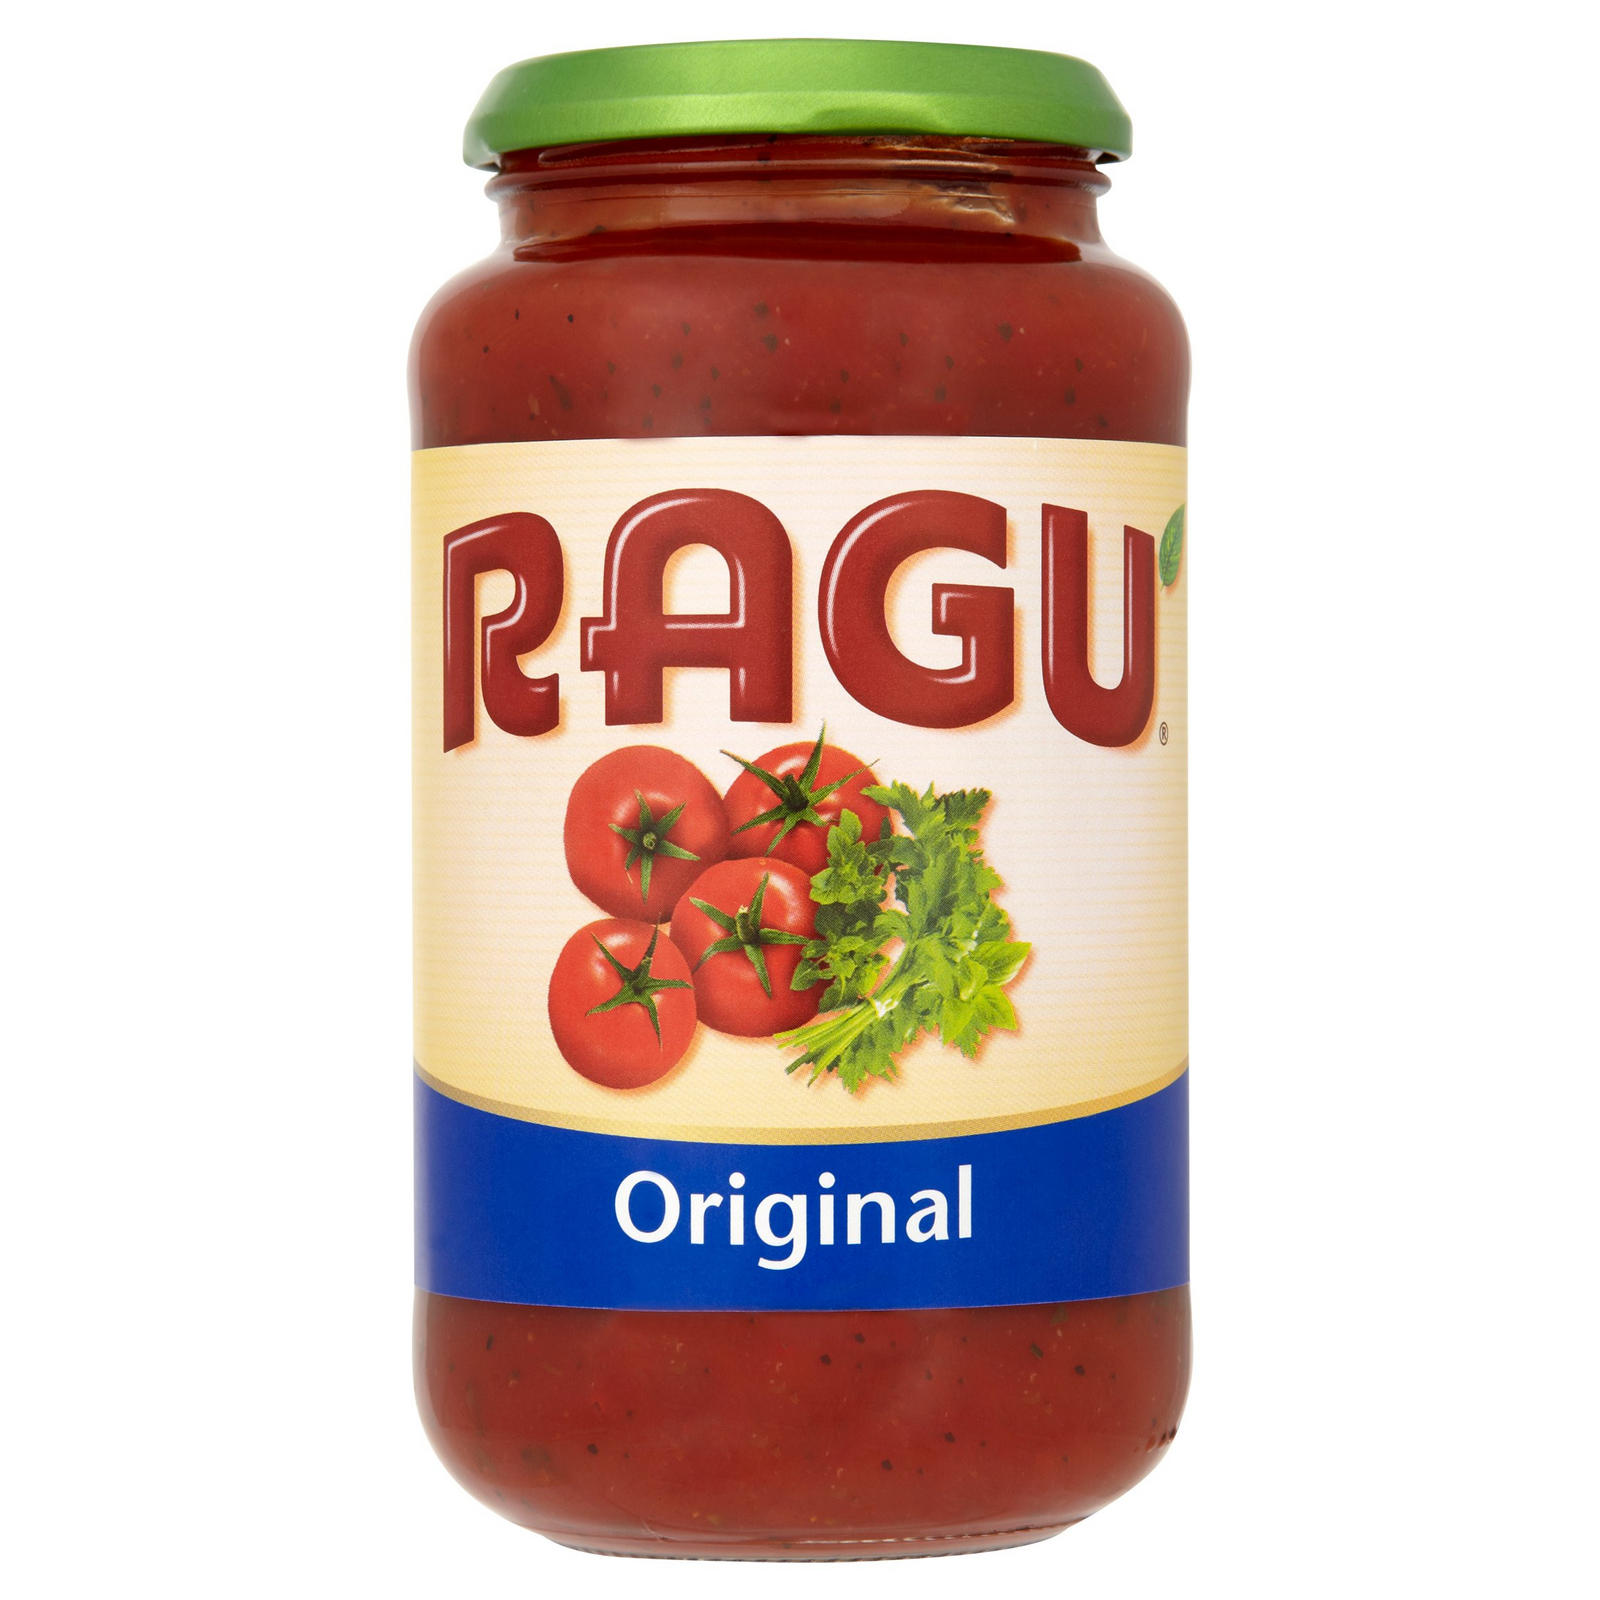 Ragu Recalls 5 Sauces